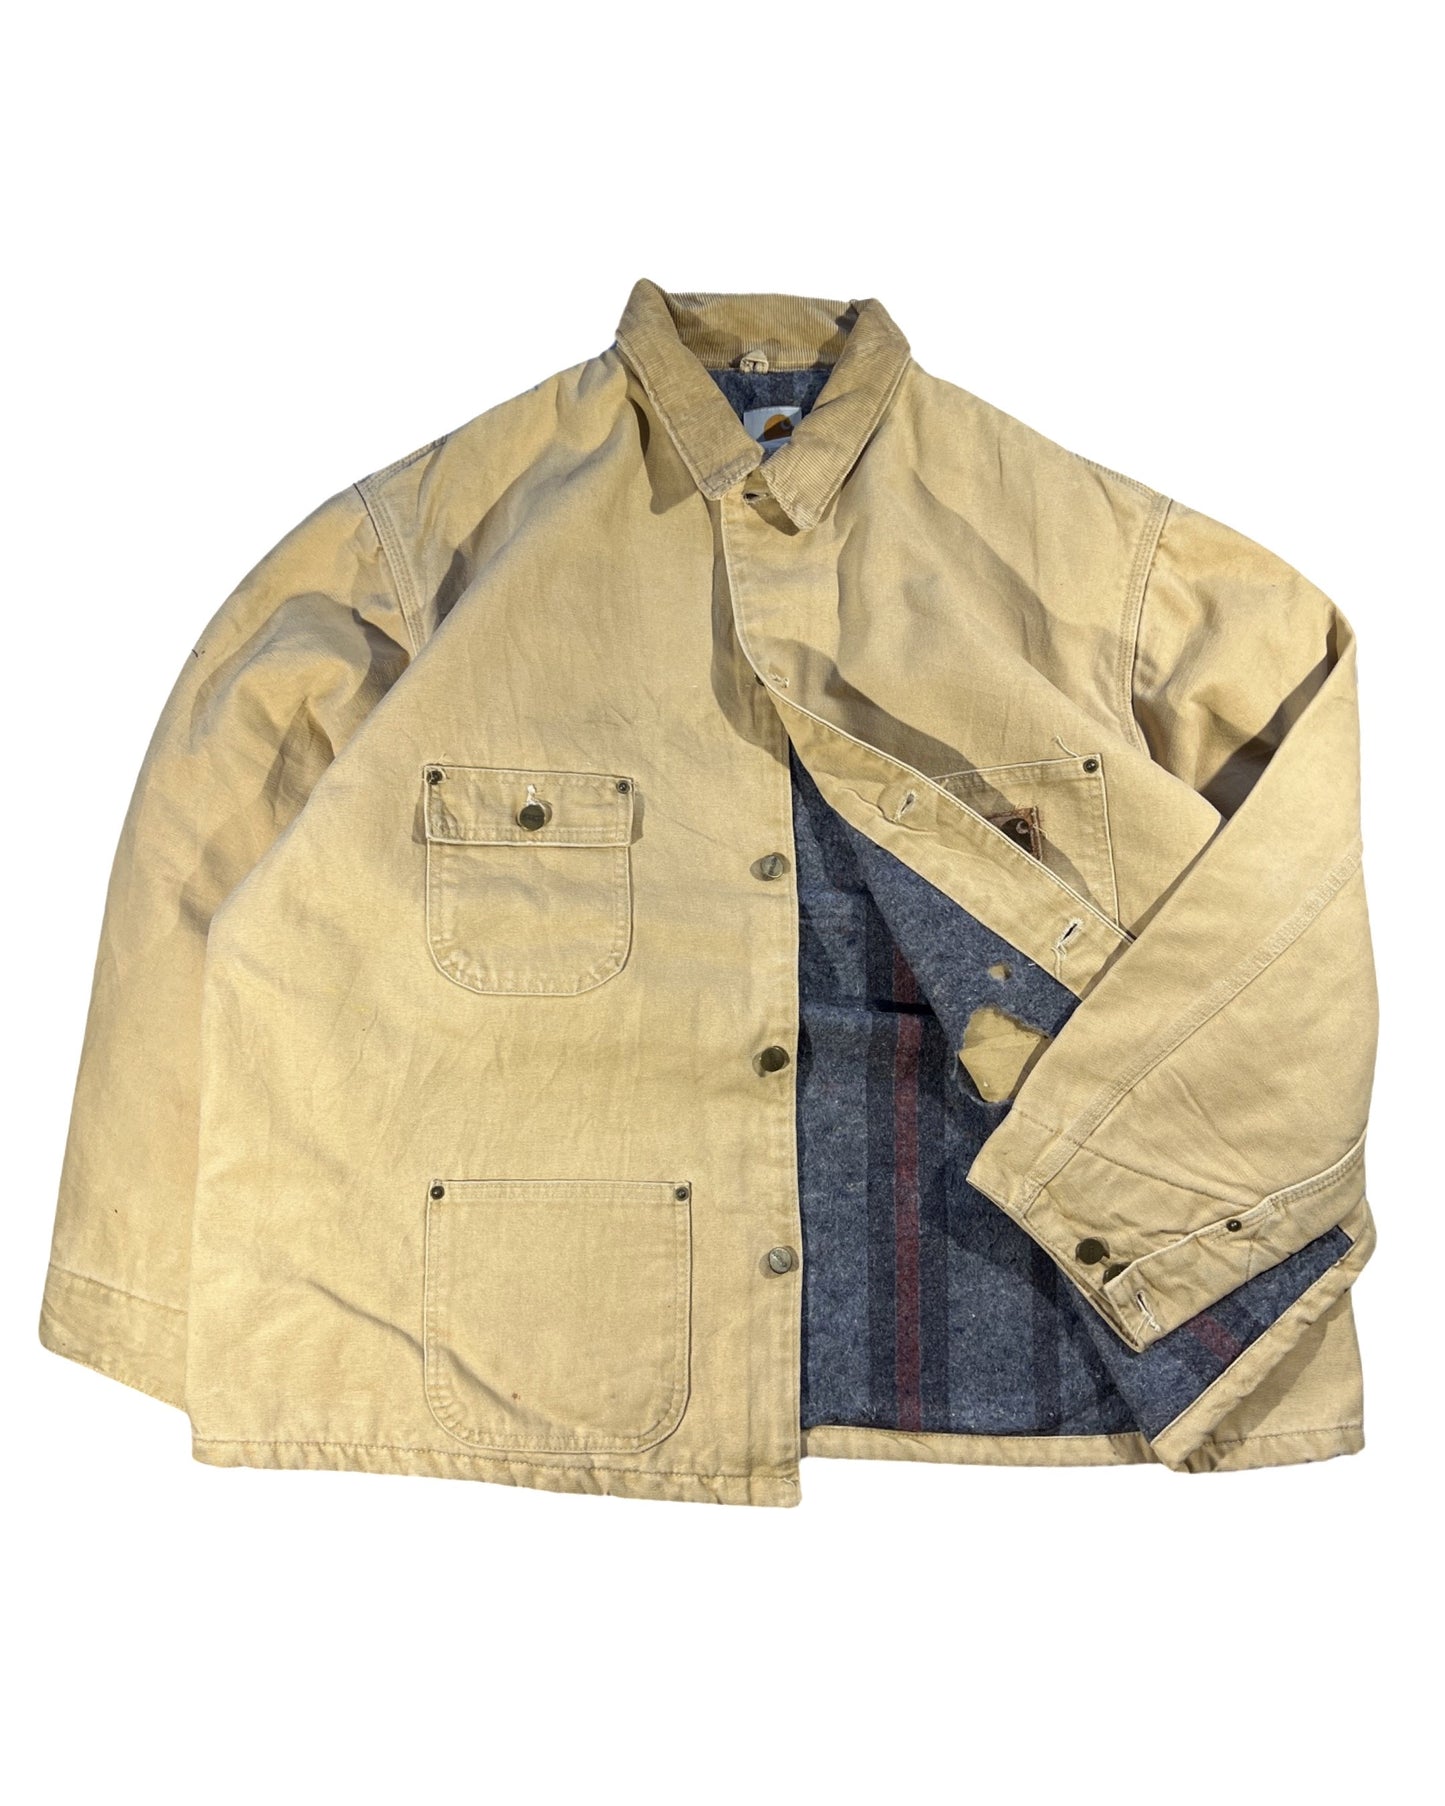 Vintage Carhartt Jacket - XXL